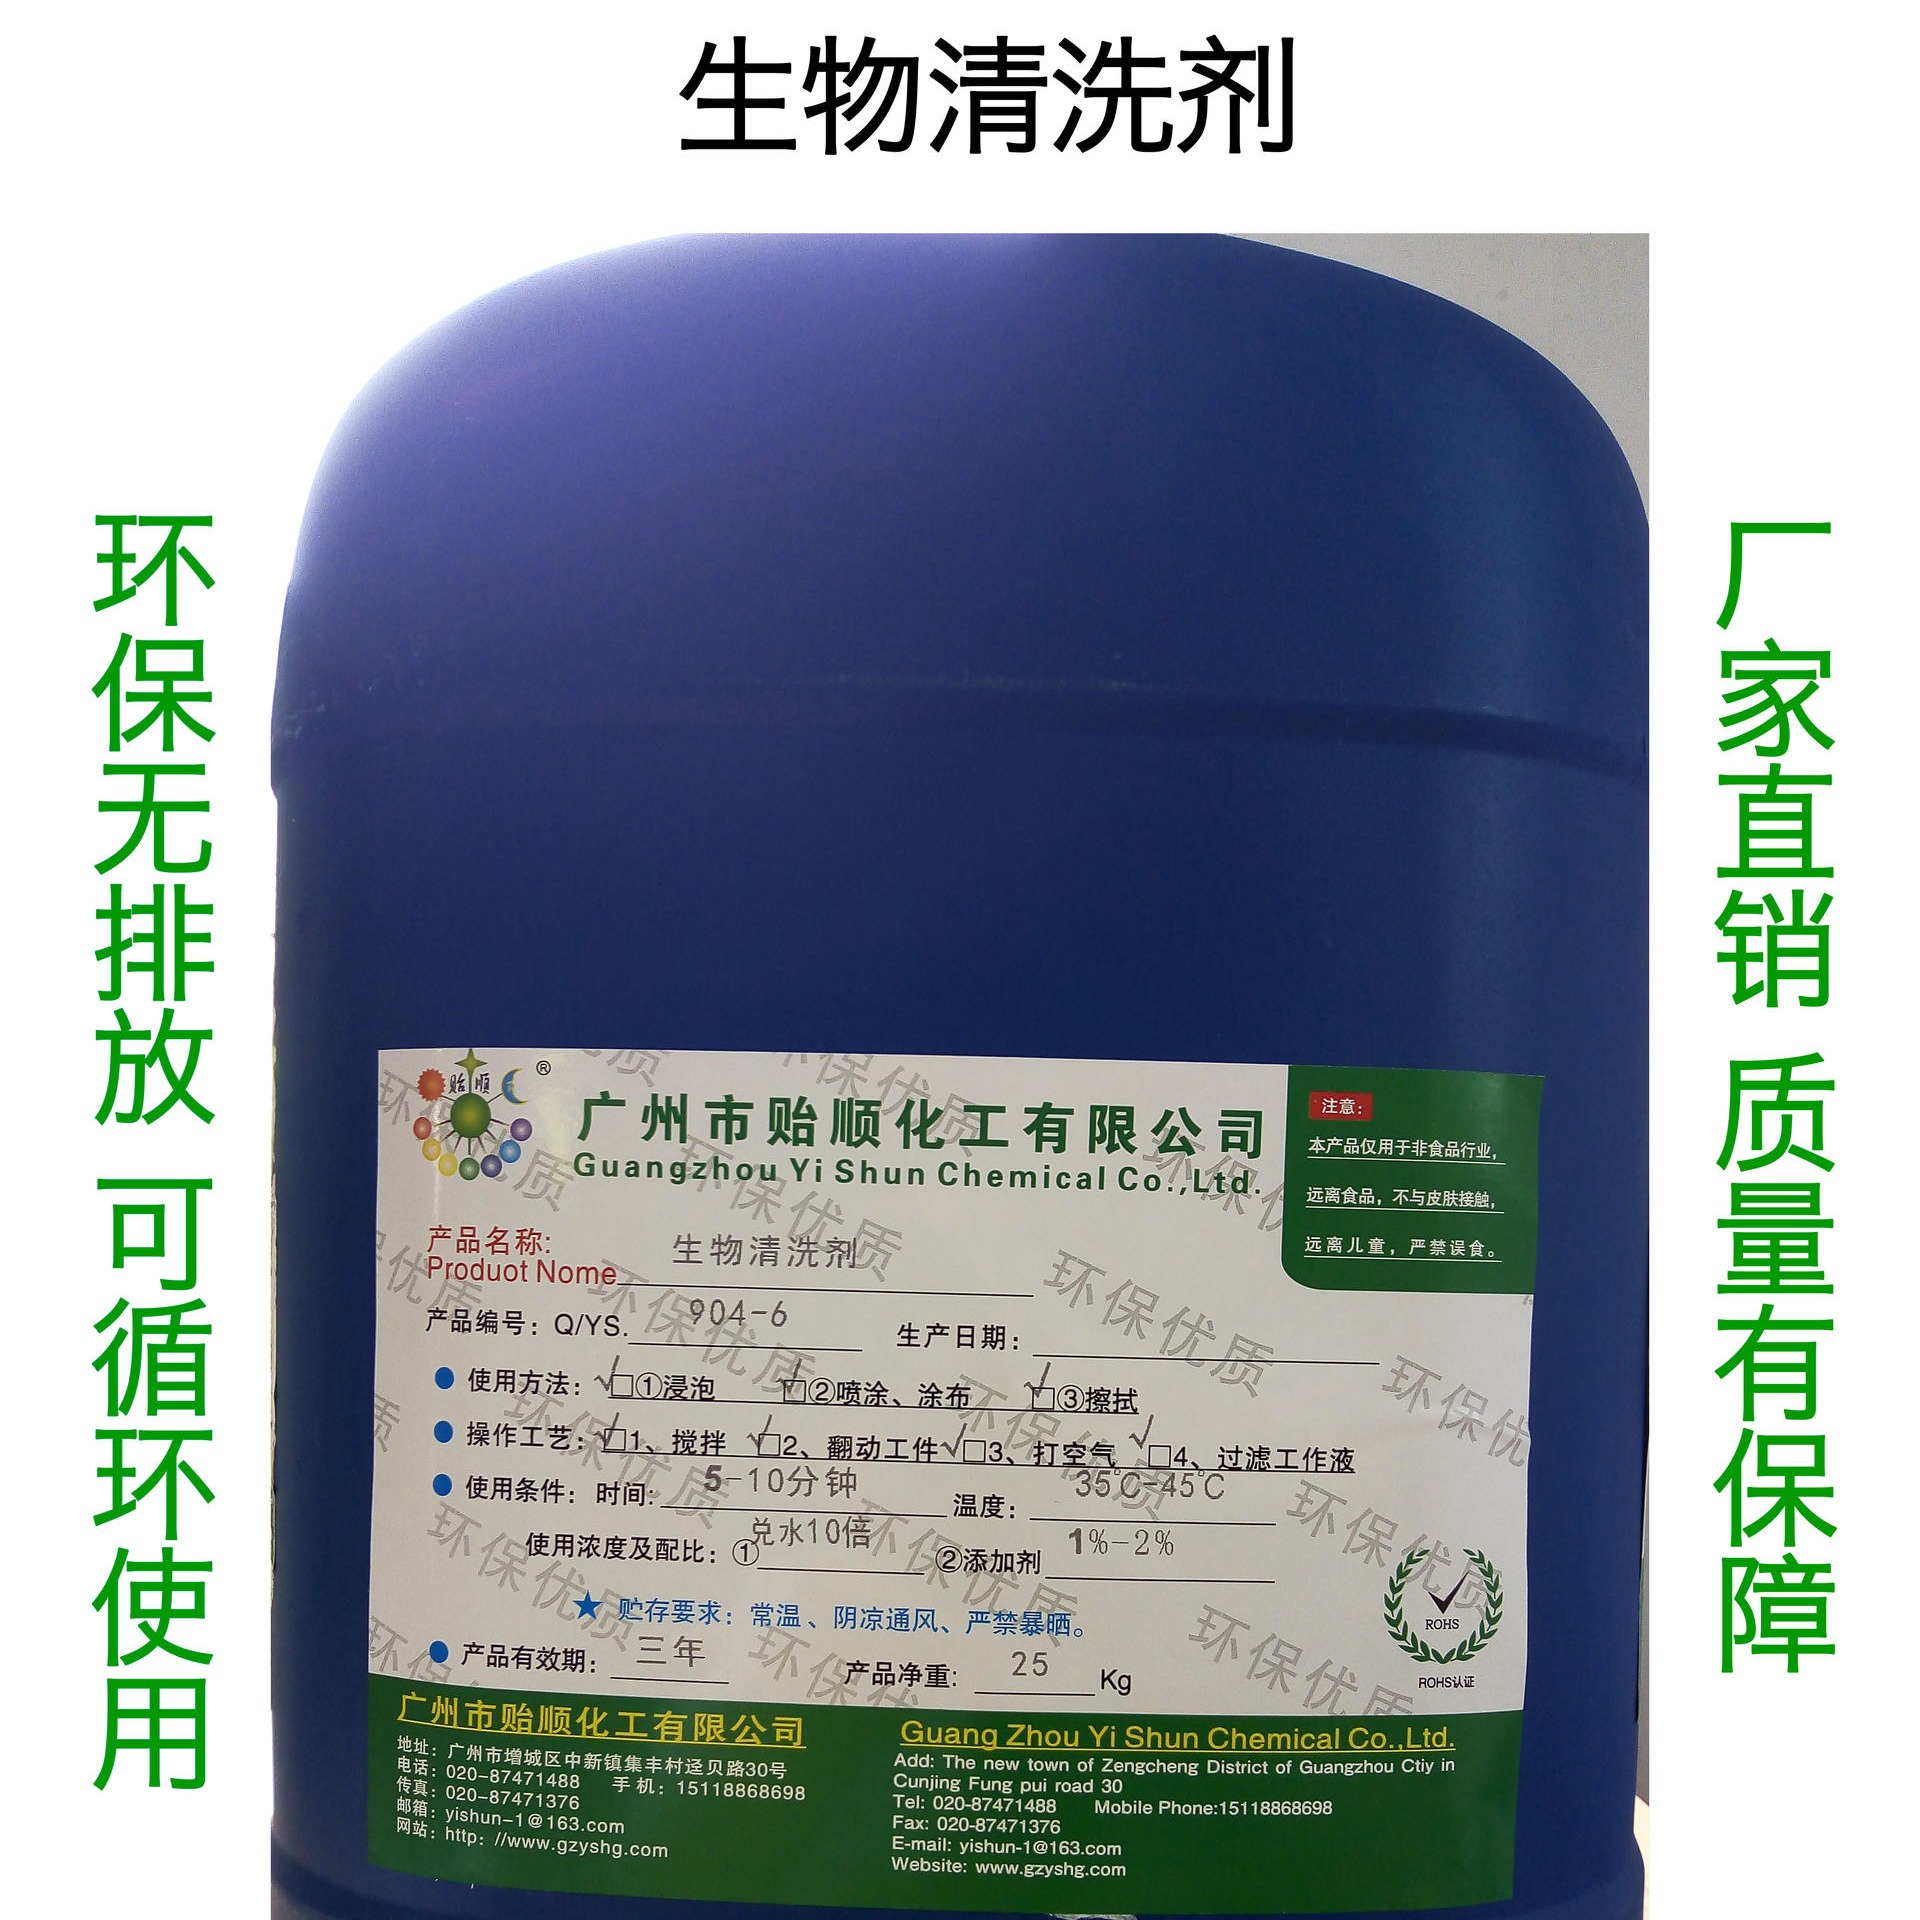 贻顺牌Q/YS.904-6生物清洗剂 高效环保型的生物清洗剂 可循环使用的生物清洗液 环保无排放的生物清洗剂图片